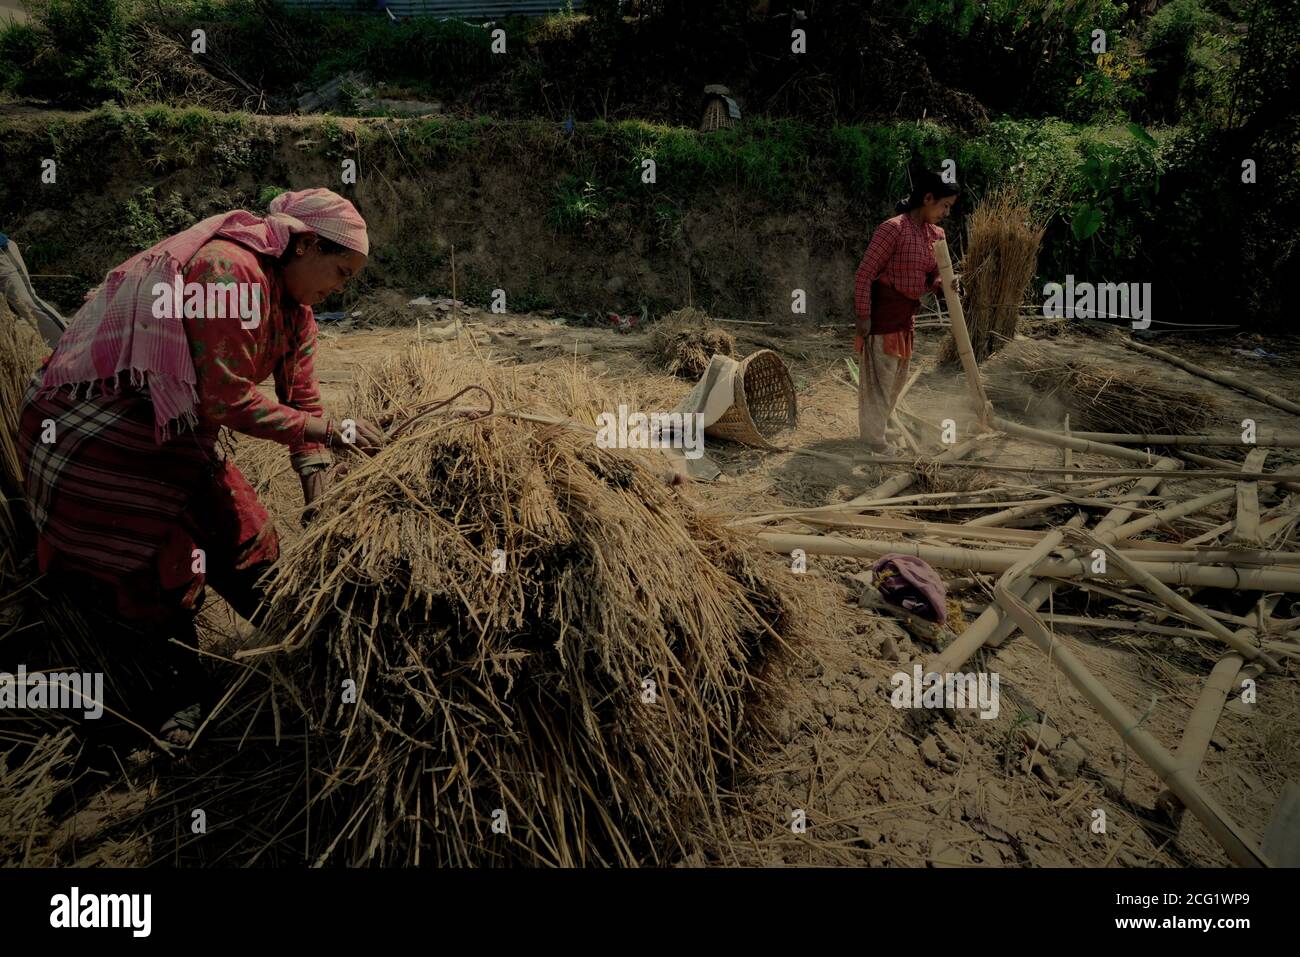 Les femmes cueillant du bambou et des wheatherb sèches pour divers usages dans une zone rurale à la périphérie de Bhaktapur, Bagmati Pradesh, Népal. Banque D'Images